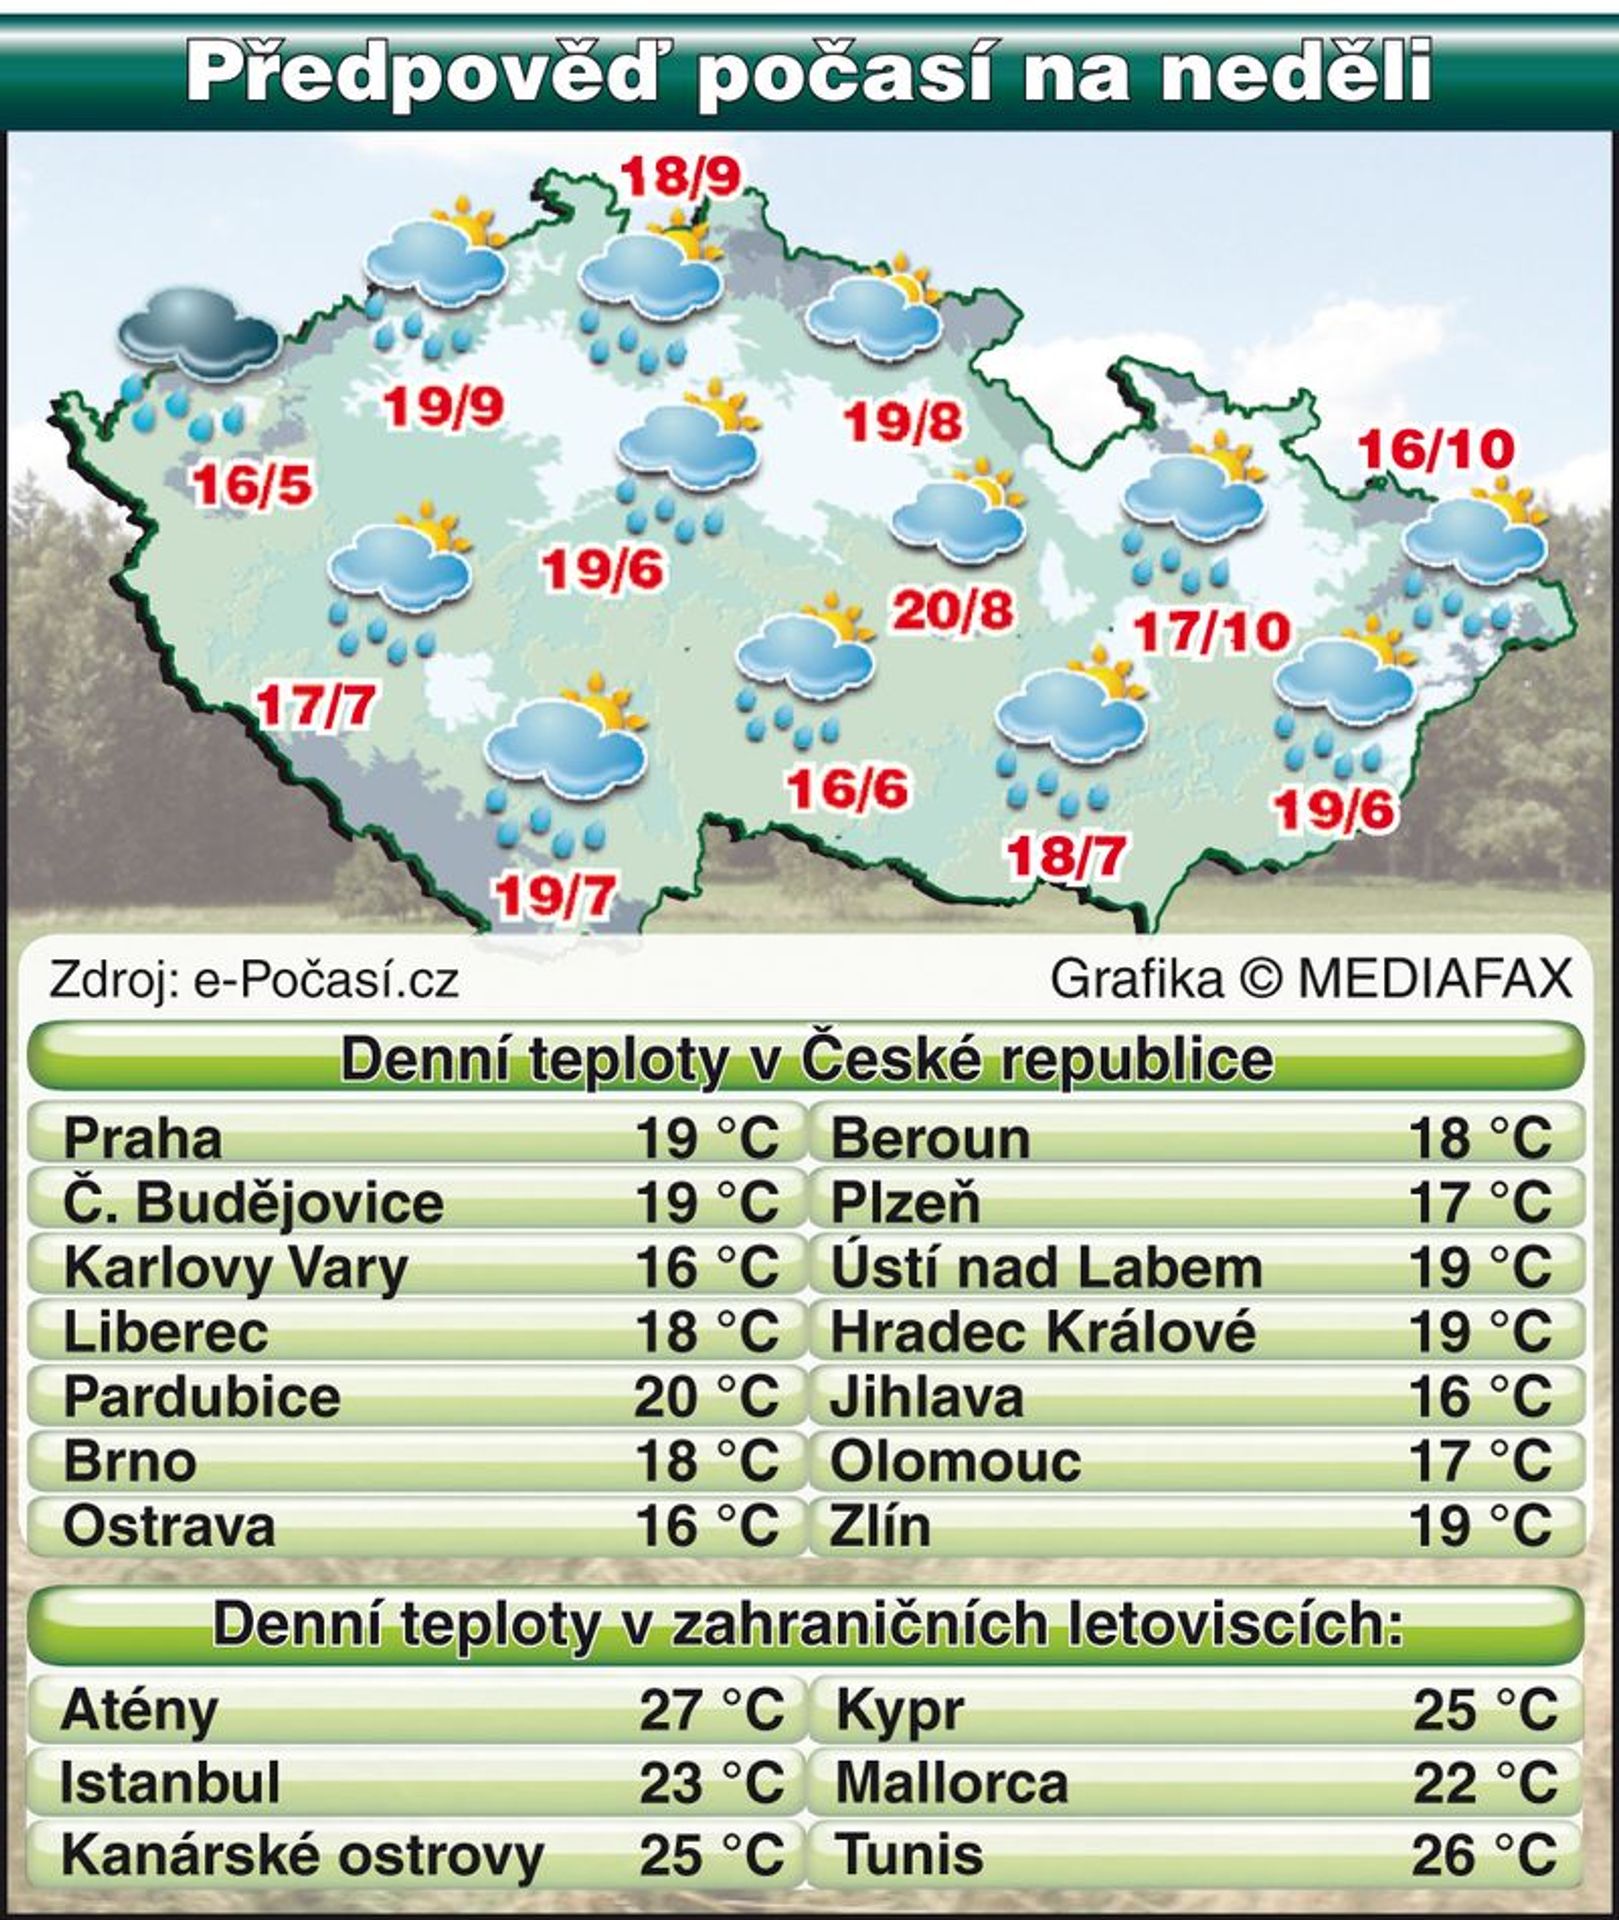 Předpověď počasí na neděli 9.5.2010 - teploty - xxxxx (1/1)